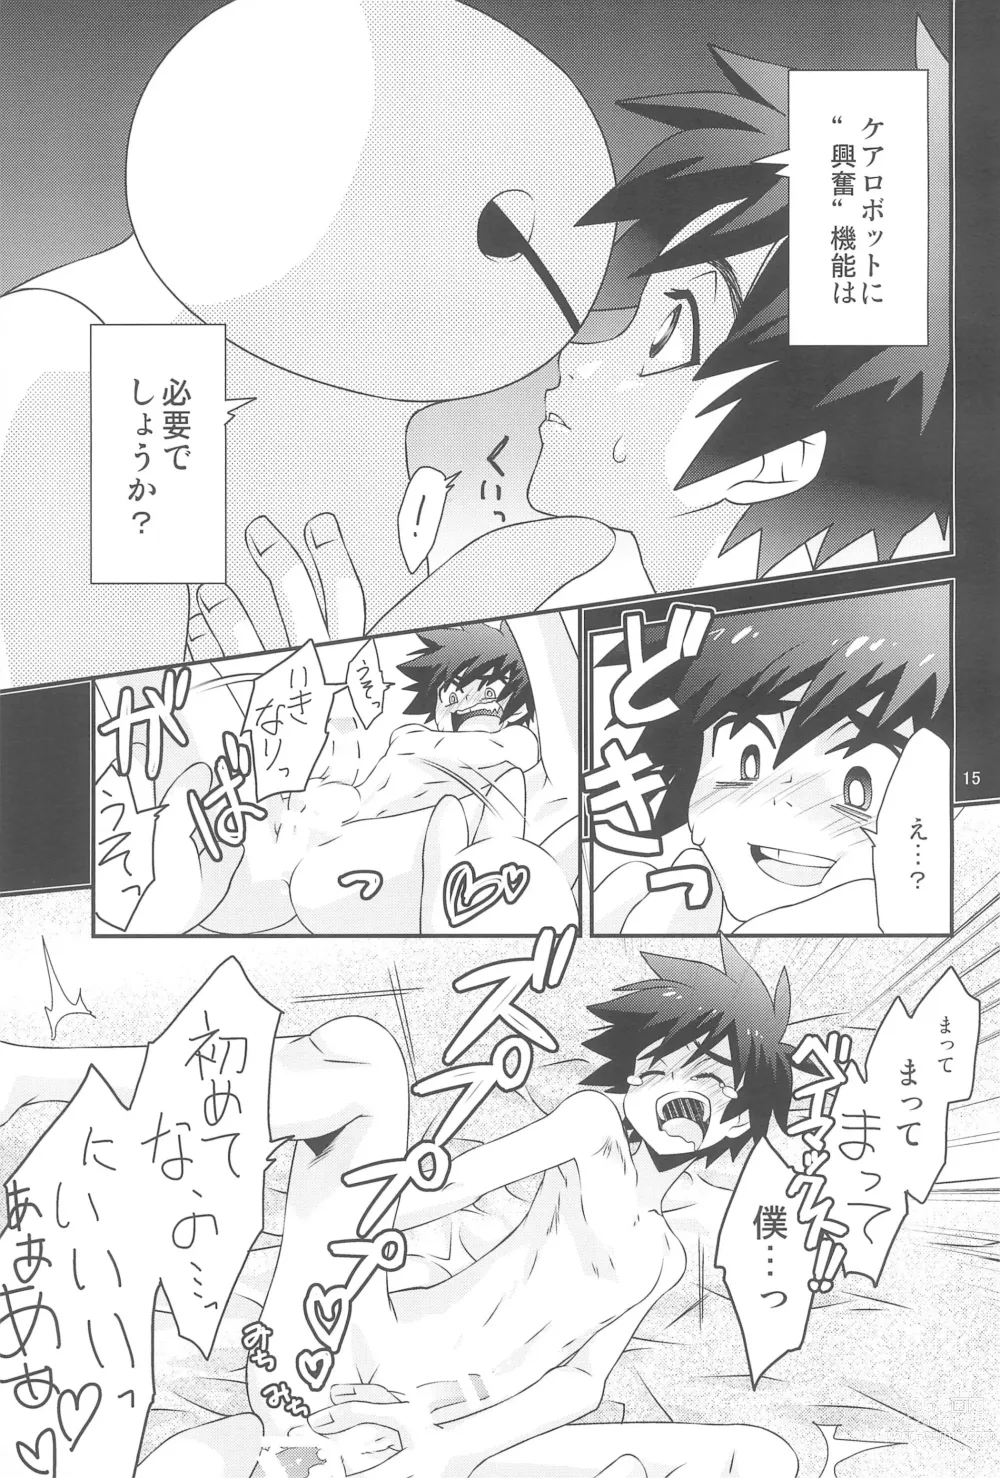 Page 15 of doujinshi Hiro-kun no Hajimete.